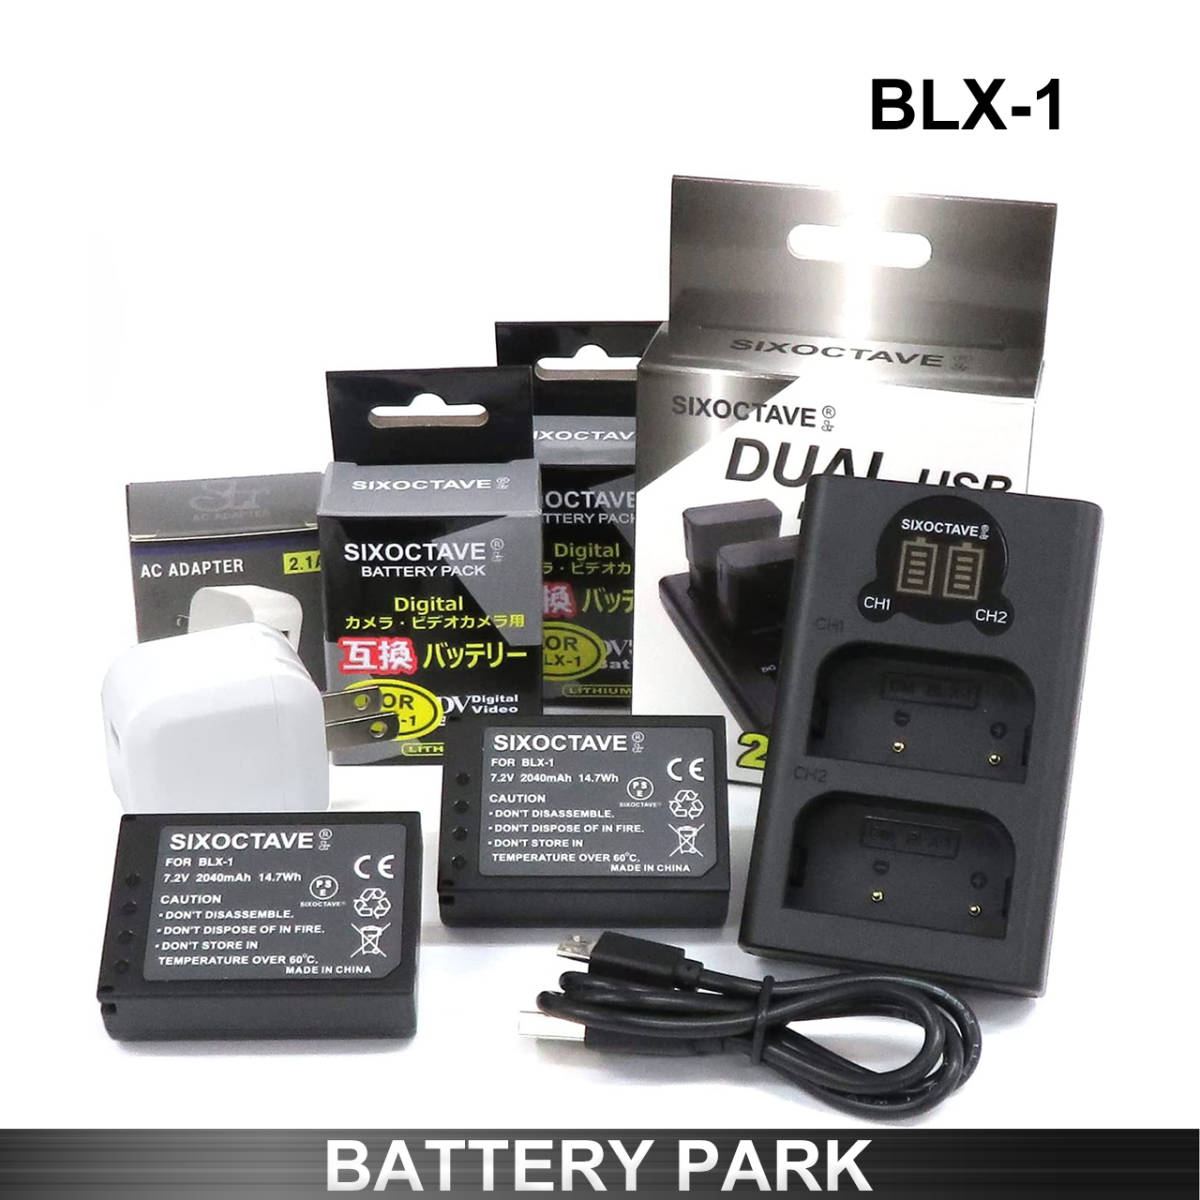 オリンパス BLX-1 対応互換バッテリー2個と互換LCD充電器 BCX-1　2.1A高速ACアダプター付 OM SYSTEM OM-1 MarkⅡ 純正 互換電池共に対応